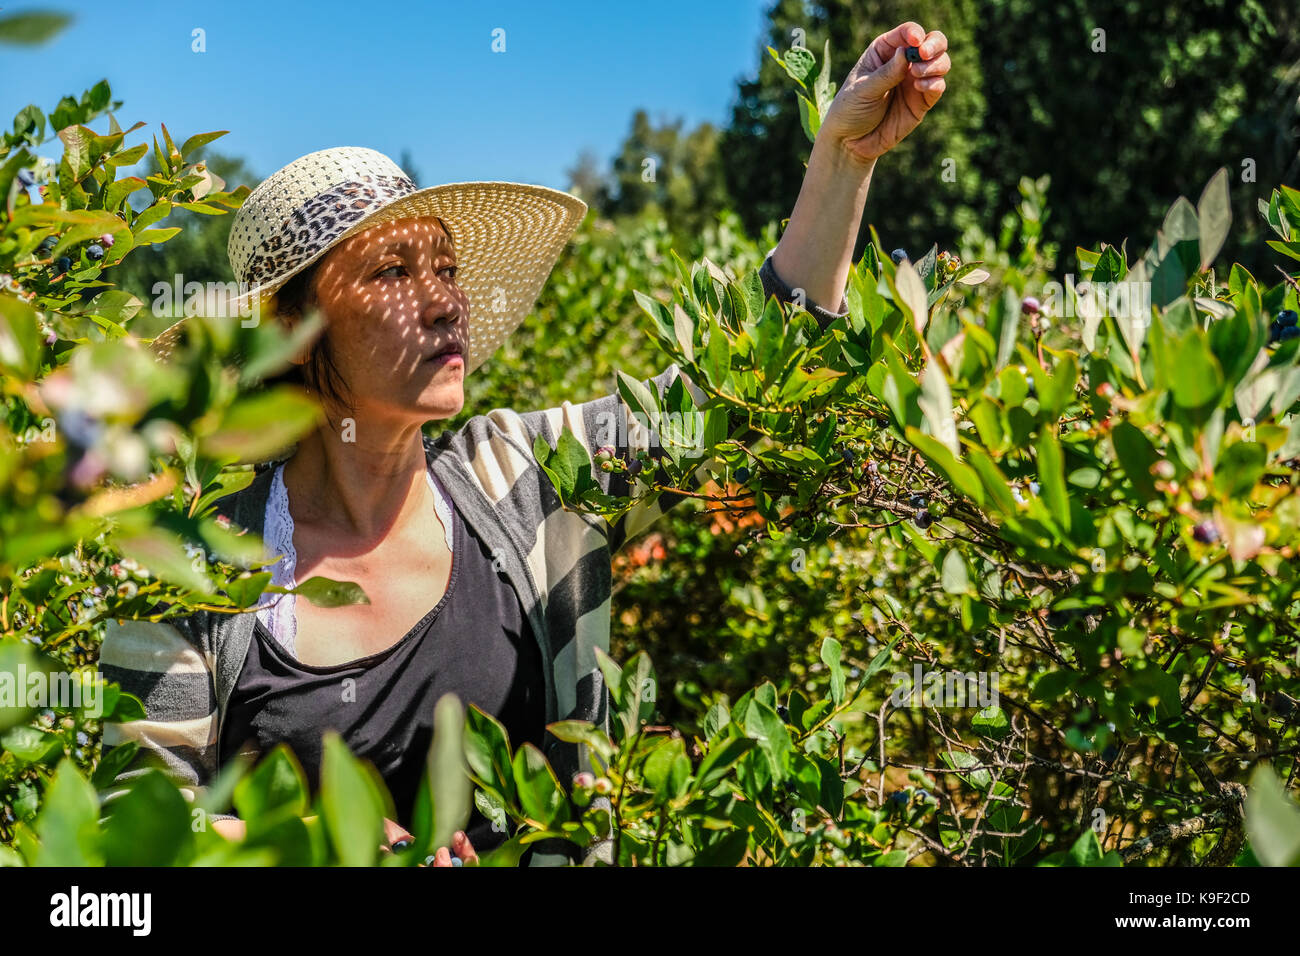 Une femme d'origine asiatique avec un chapeau de paille cueillait des baies bleu à un U CHOISISSEZ Blue berry farm dans l'été Banque D'Images